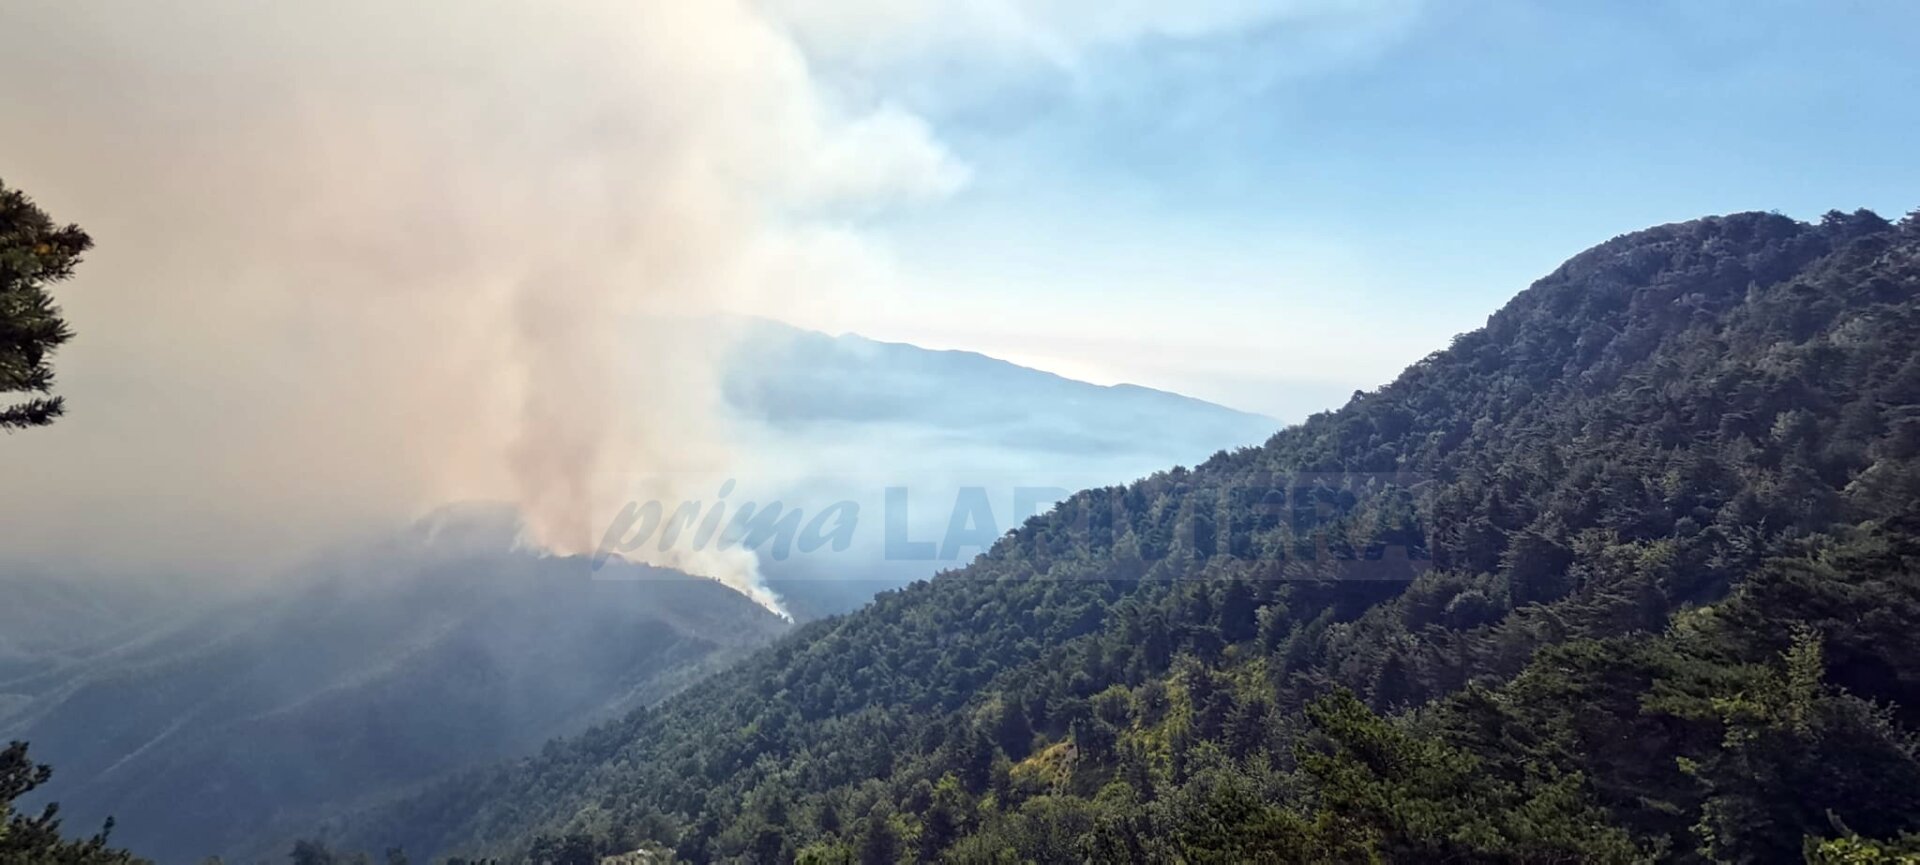 incendio boschivo olivetta san michele 27 luglio ventimiglia